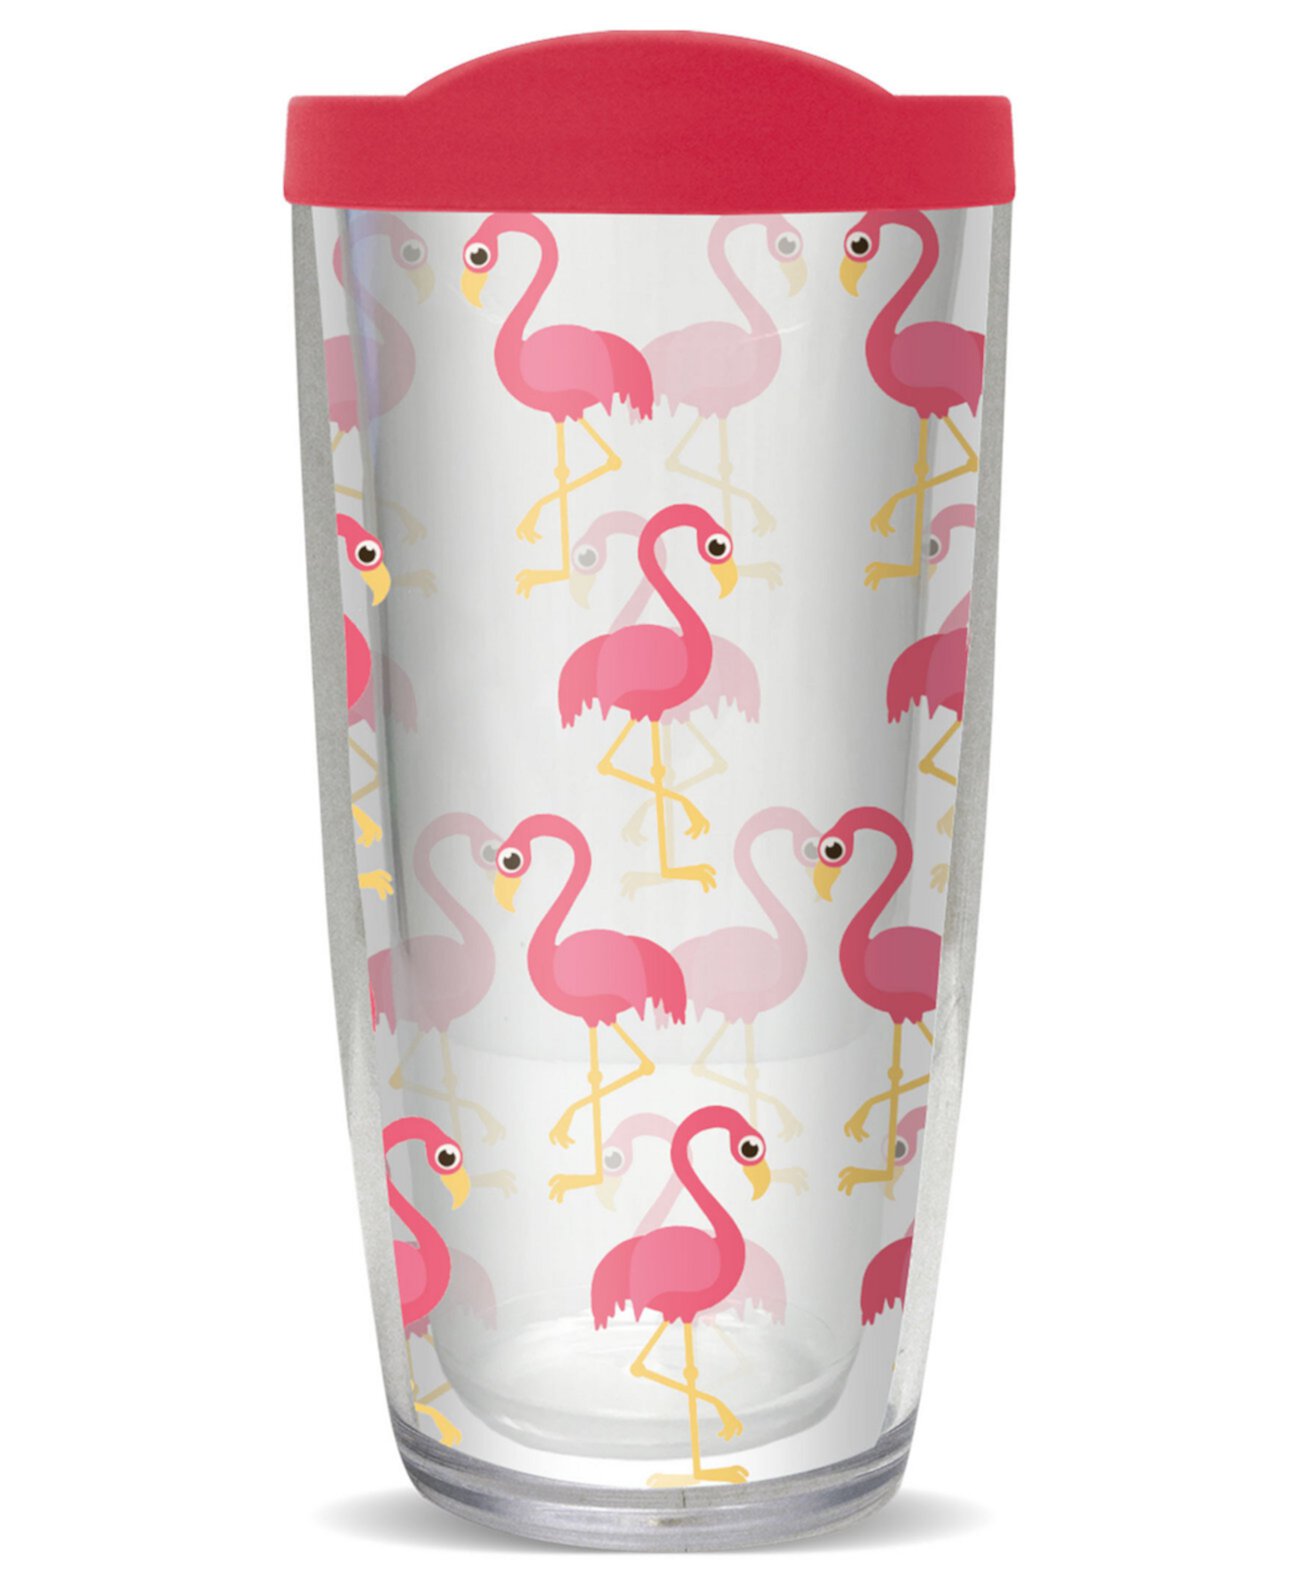 Фламинго с двойной стенкой изолированный стакан, 16 унций Freeheart